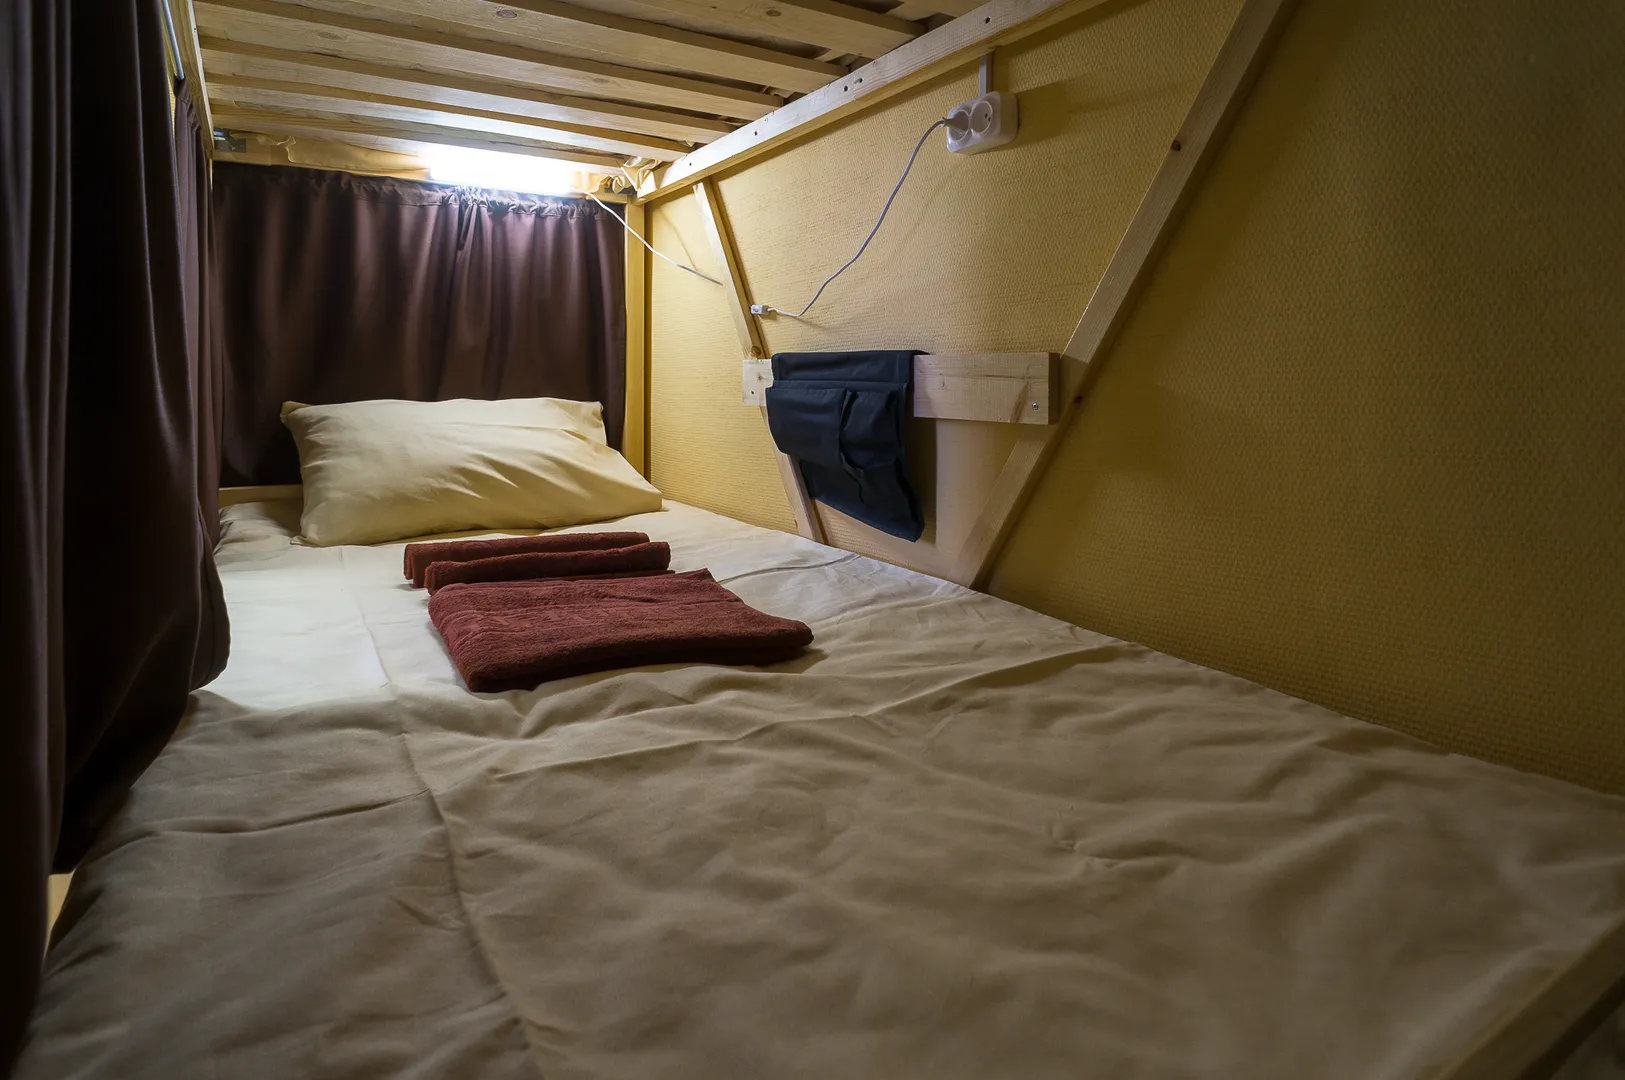 Кровати оснащены индивидуальным освещением , розеткой и шторками.